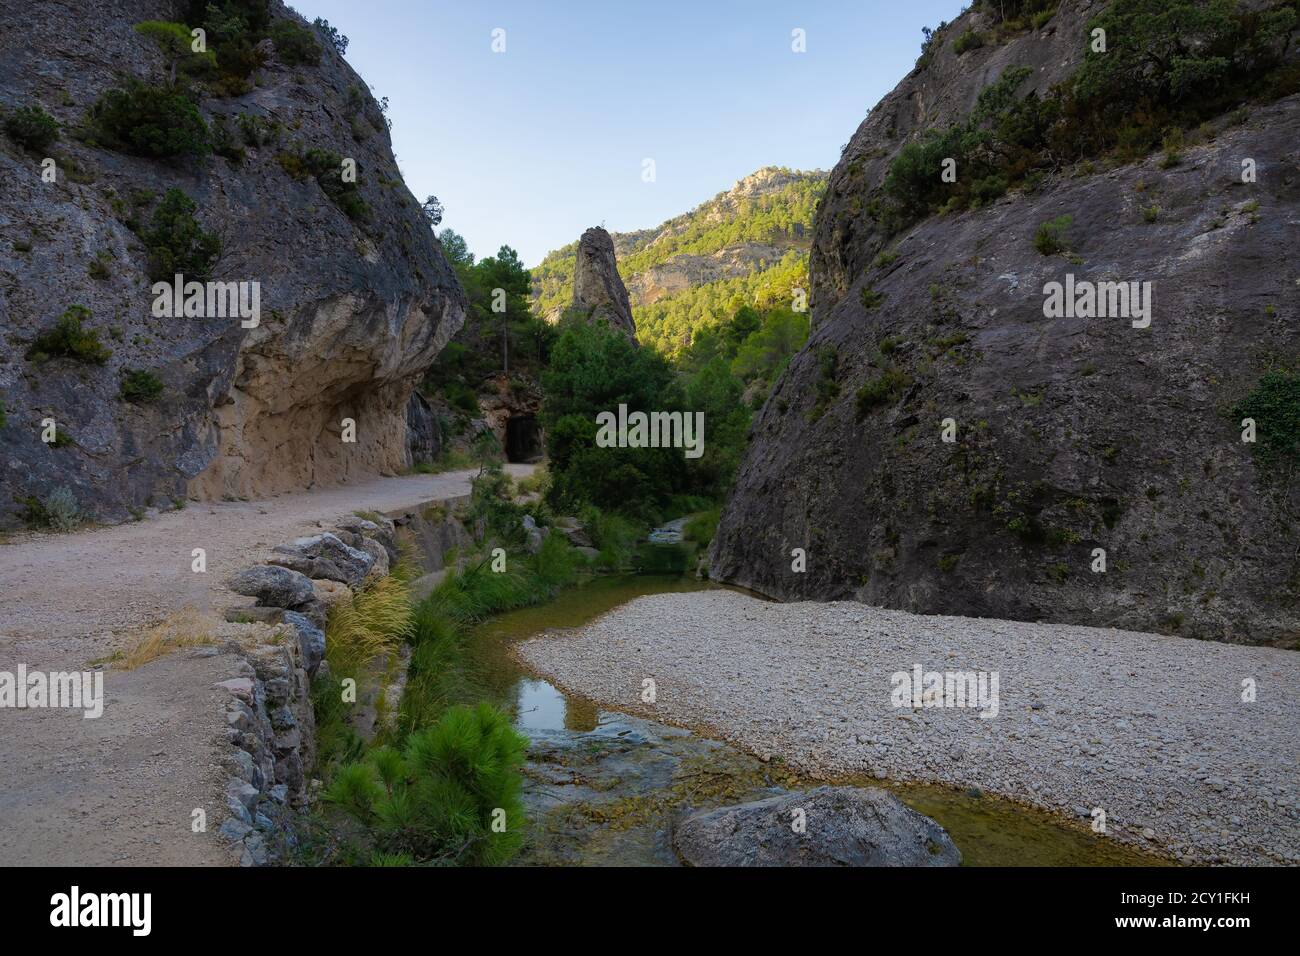 Ingresso all'area naturale protetta di Parrizal, un percorso che sale sul fiume Matarraña fino al canyon Els Estres, dove nasce in montagna Foto Stock